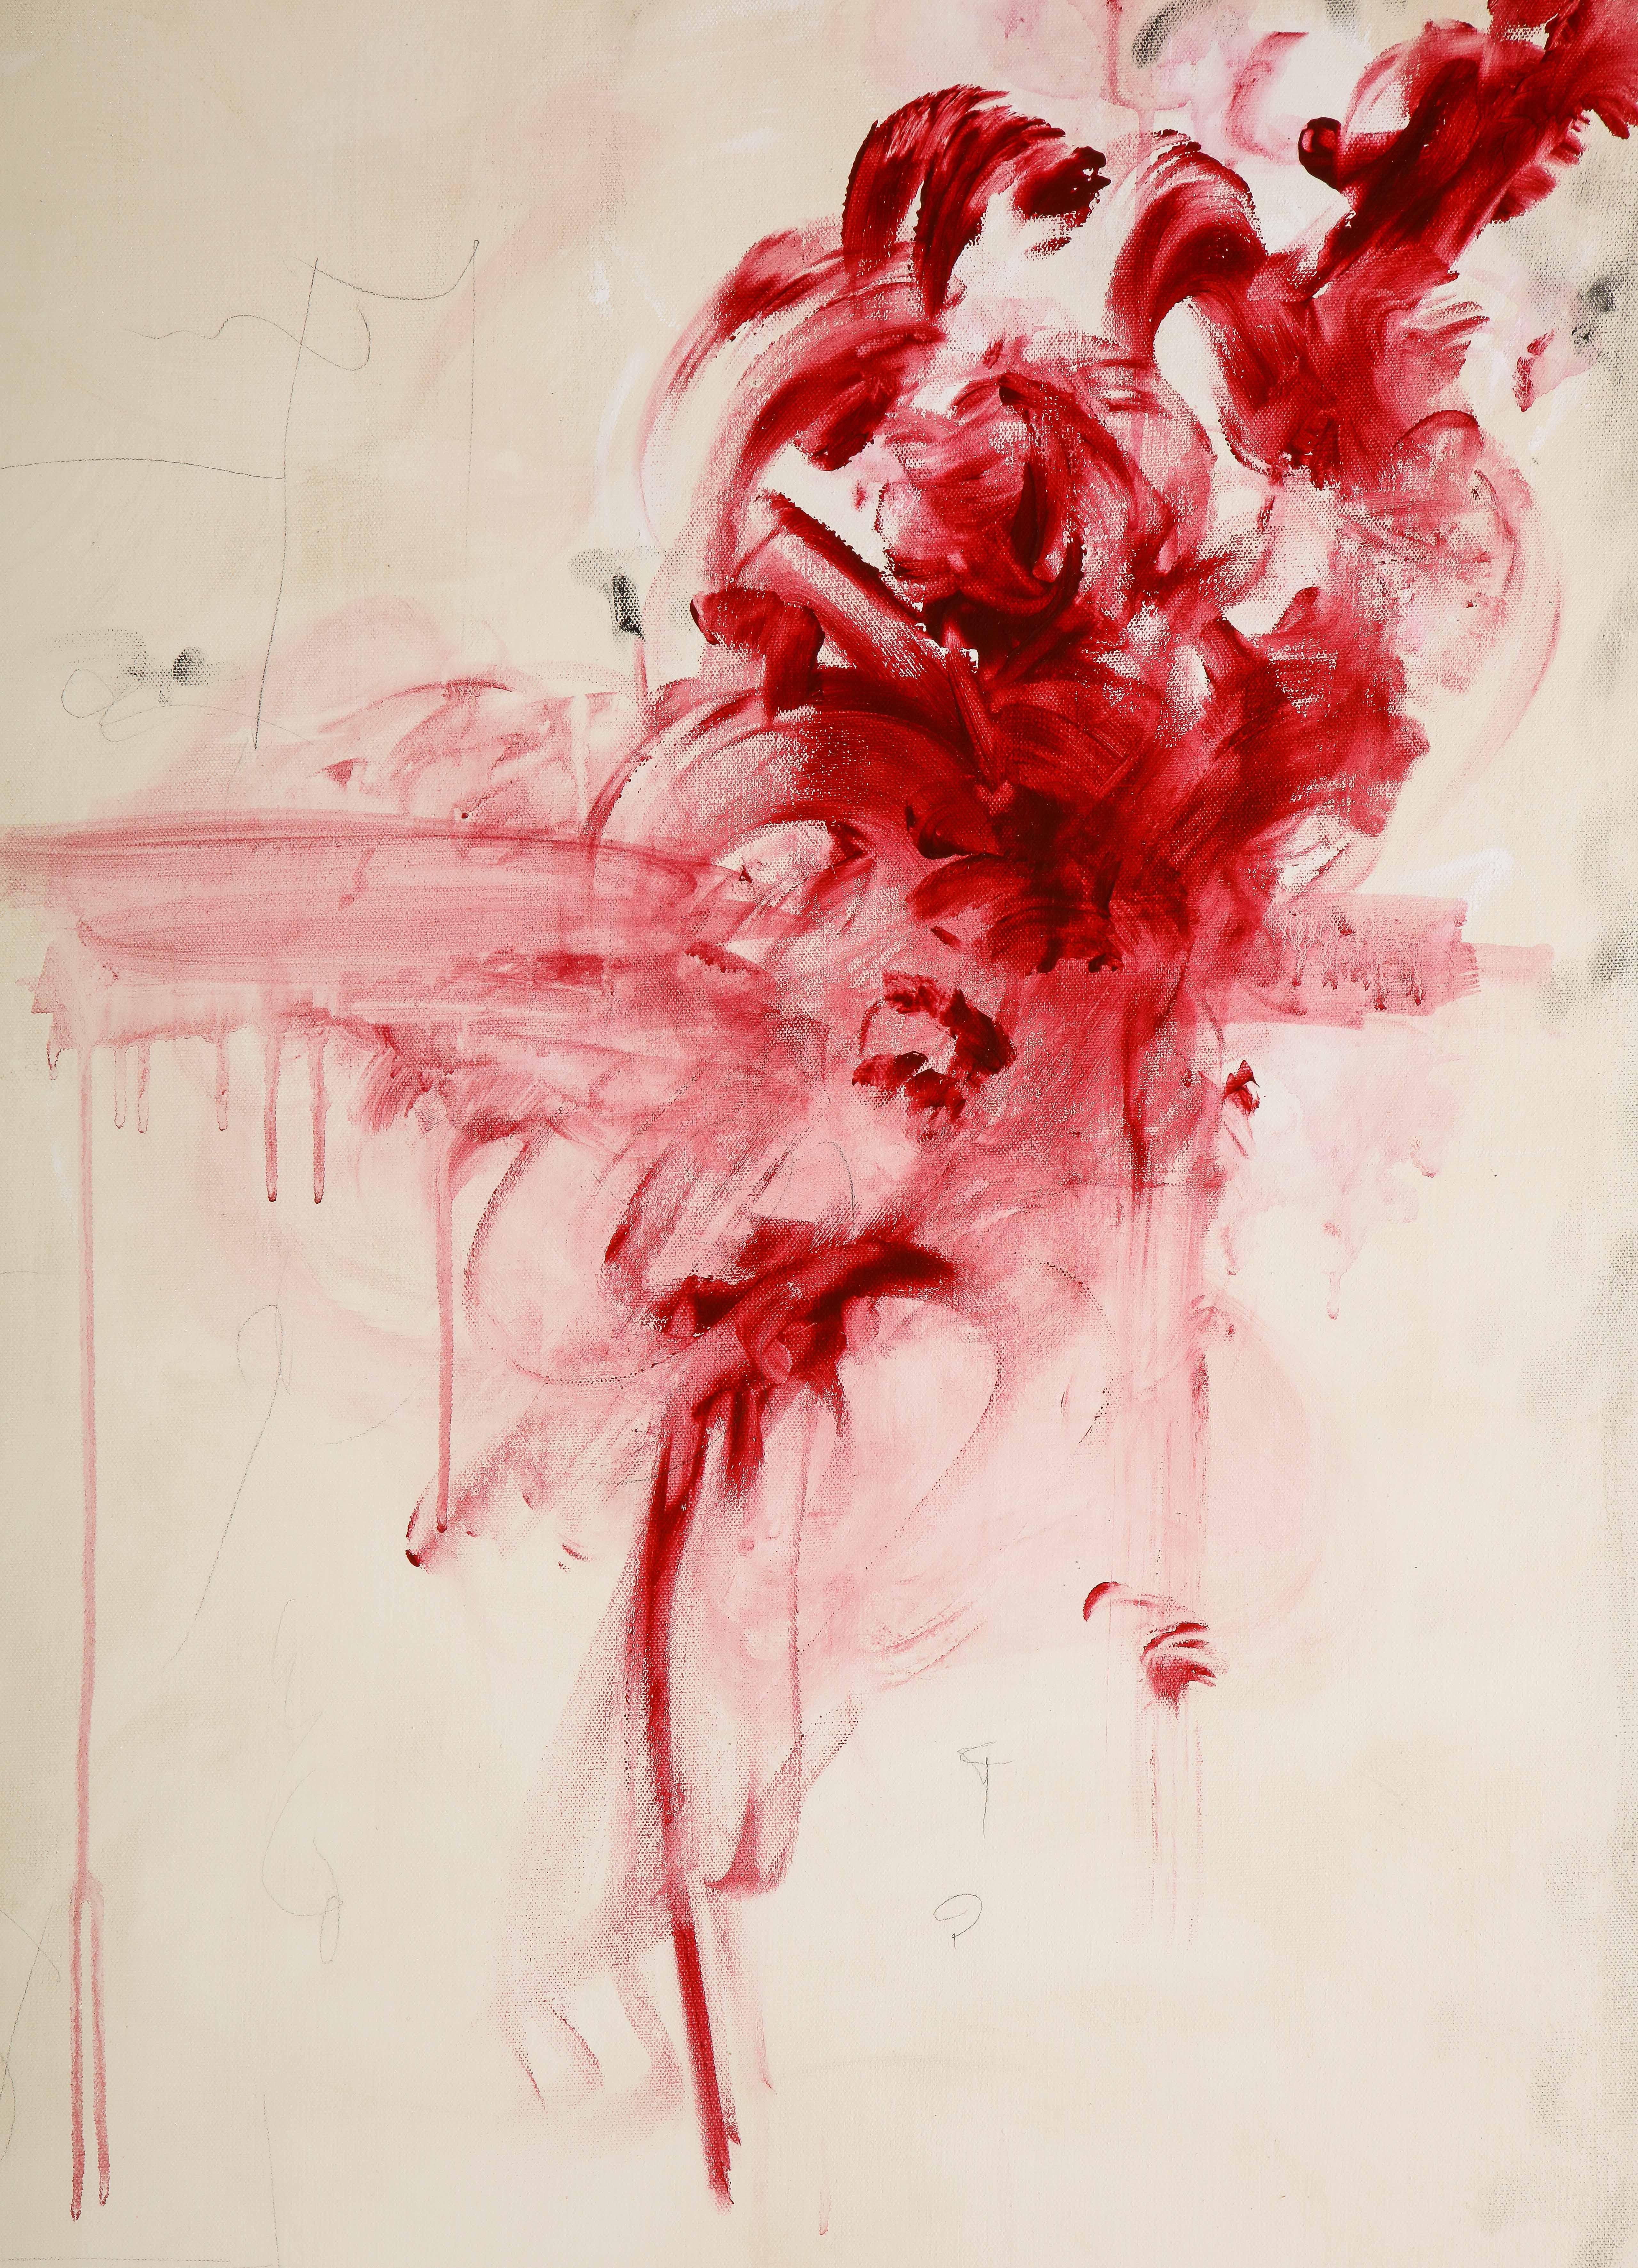 Großes Gemälde „Amore“ in Elfenbein-:: Weiß-:: Schwarz- und Rottönen:: 2::44 m x 3::66 m 2